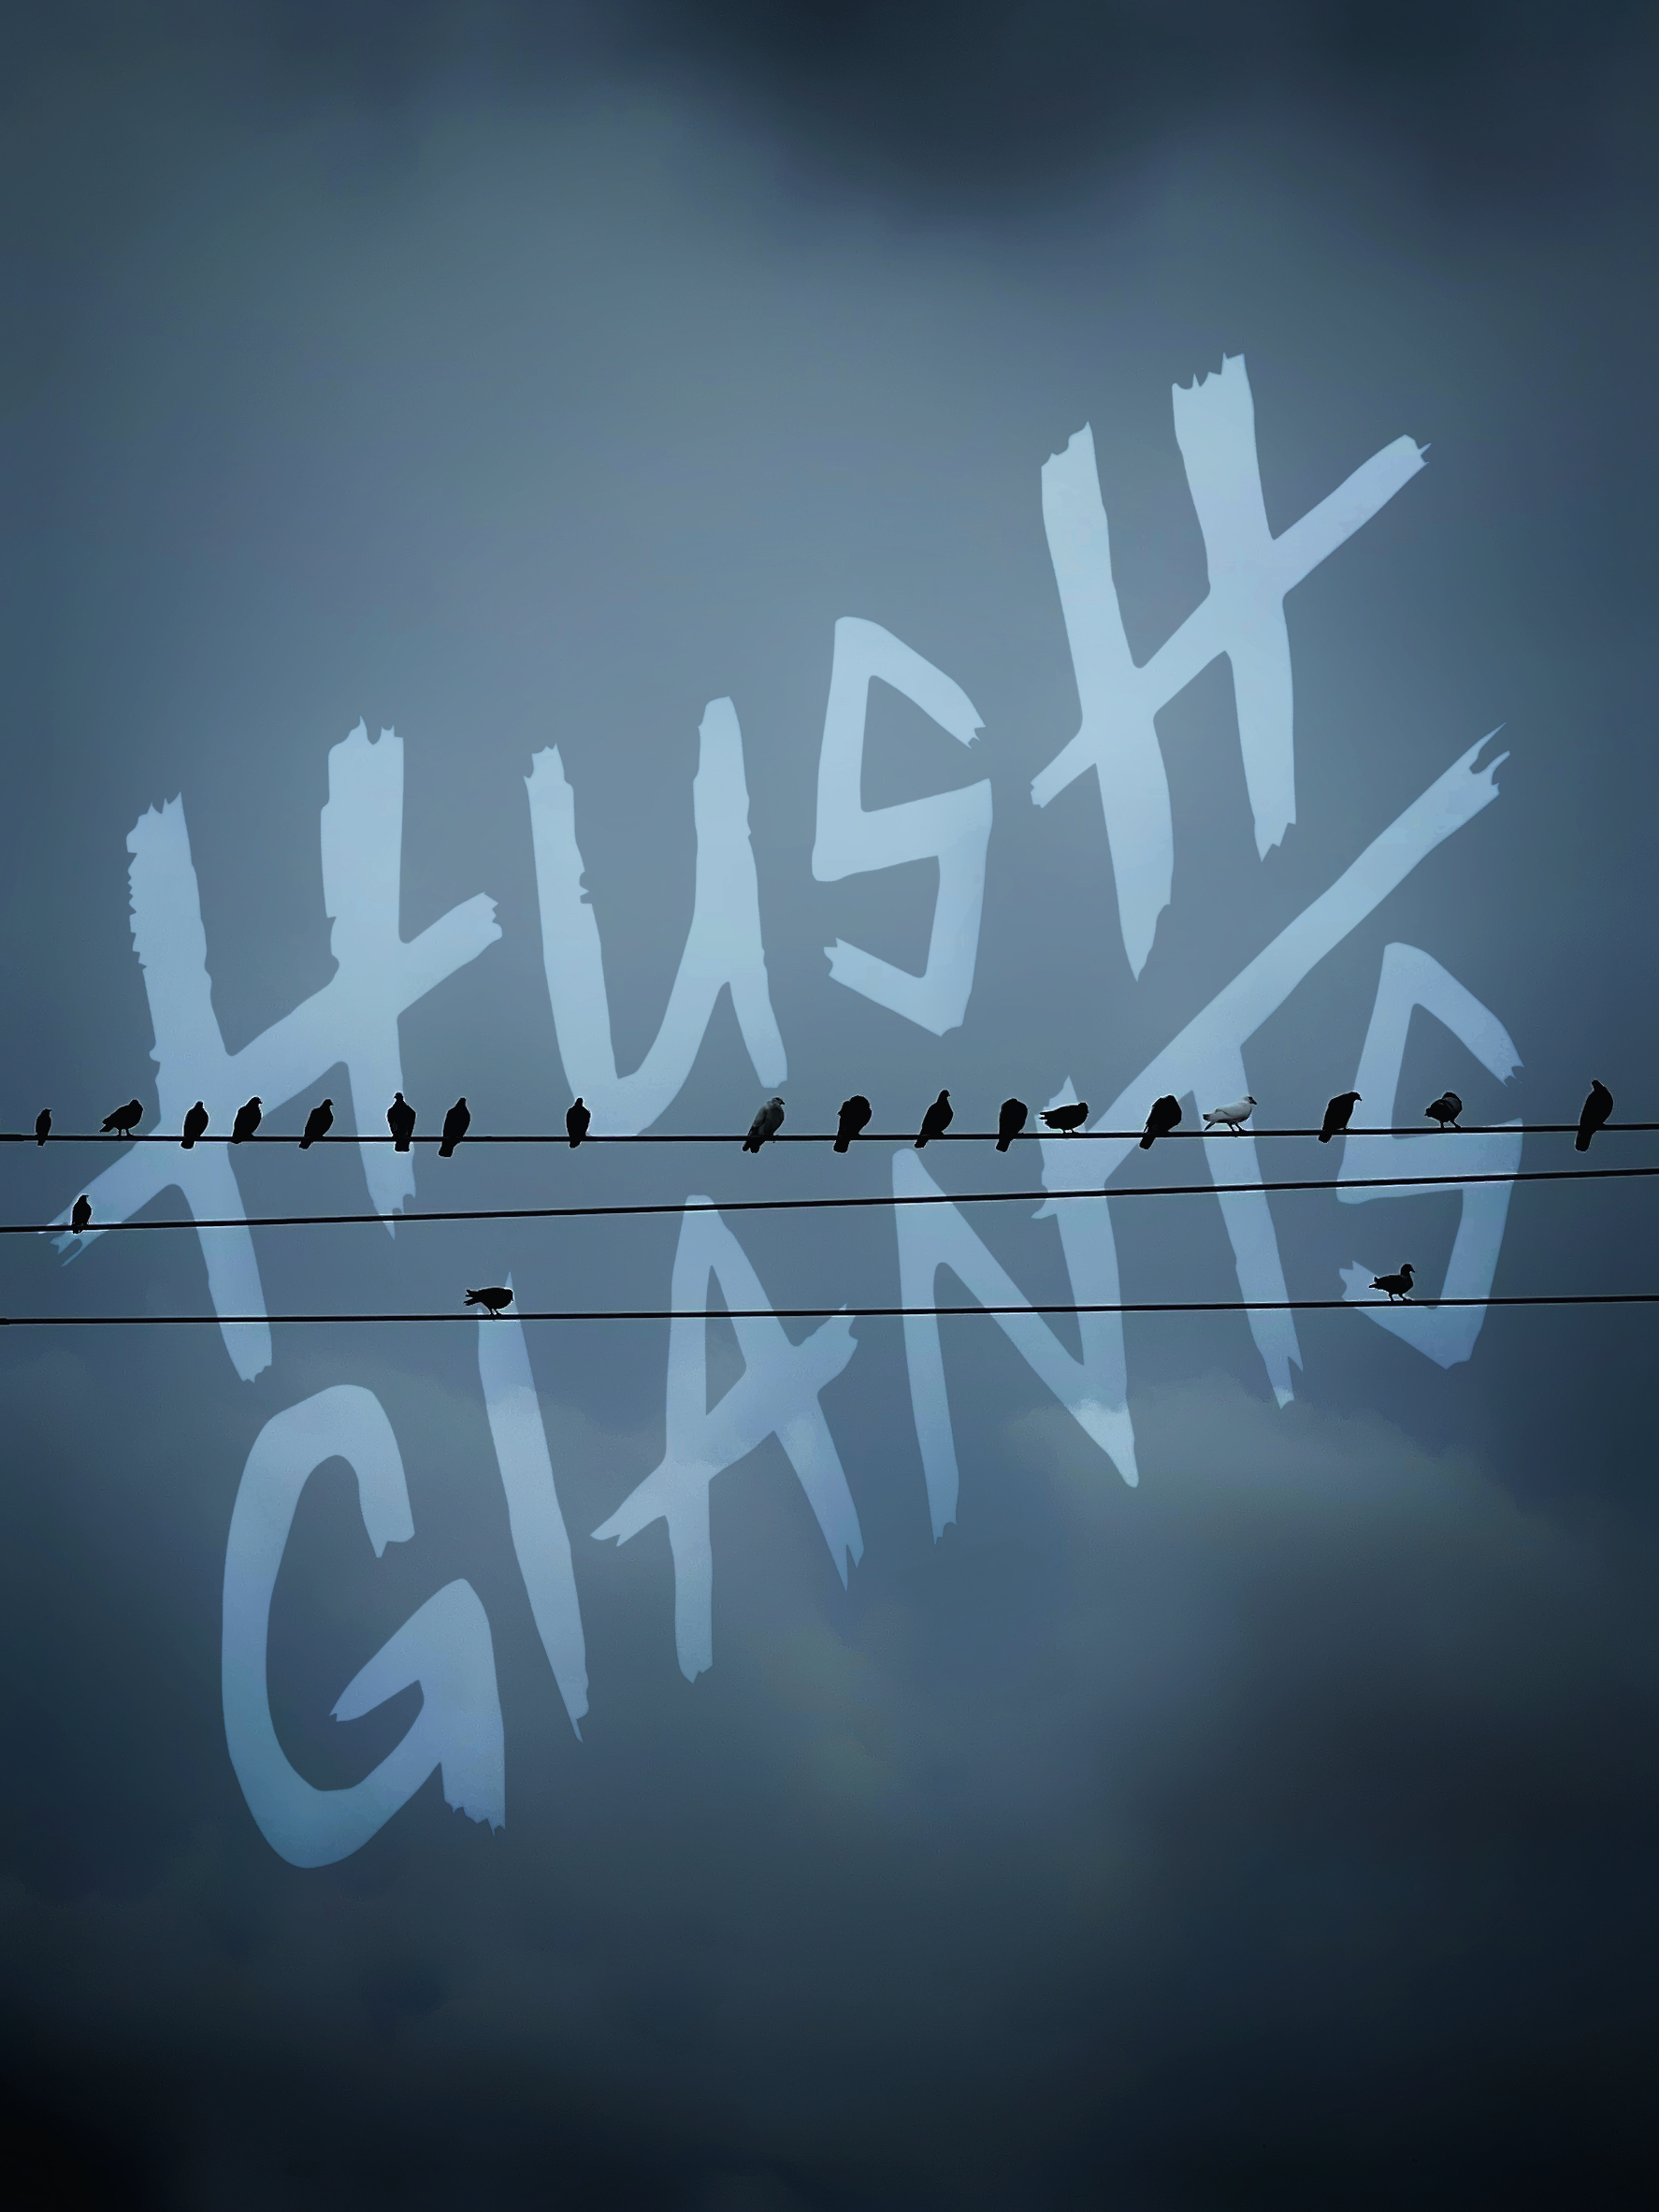 Hush Giants